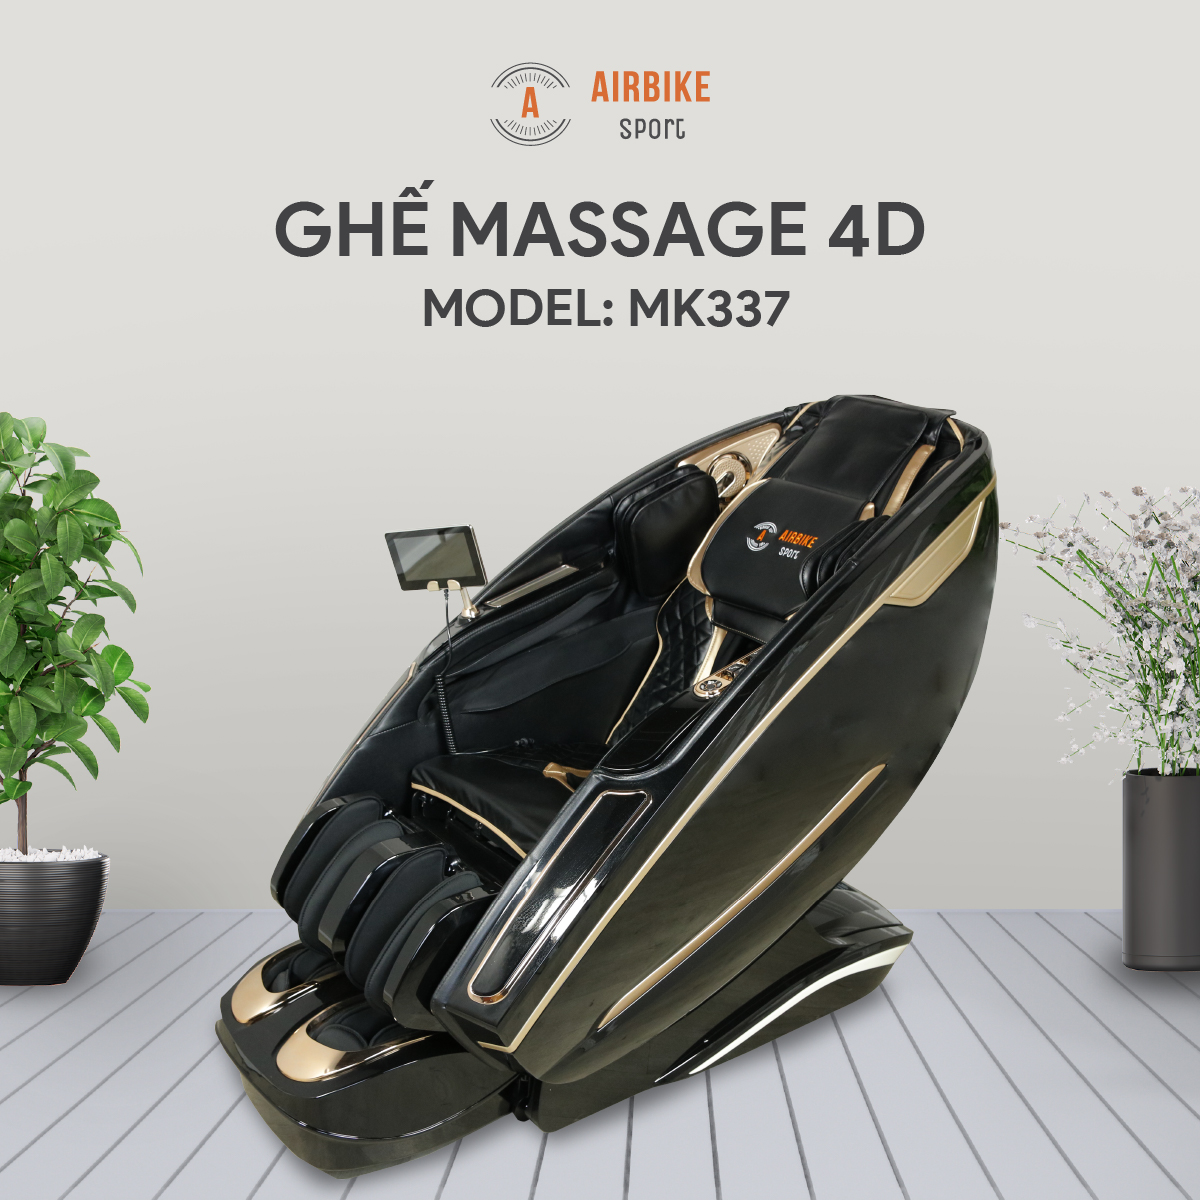 ghế massage toàn thân cao cấp air bike sport mk337 - hàng chính hãng 1